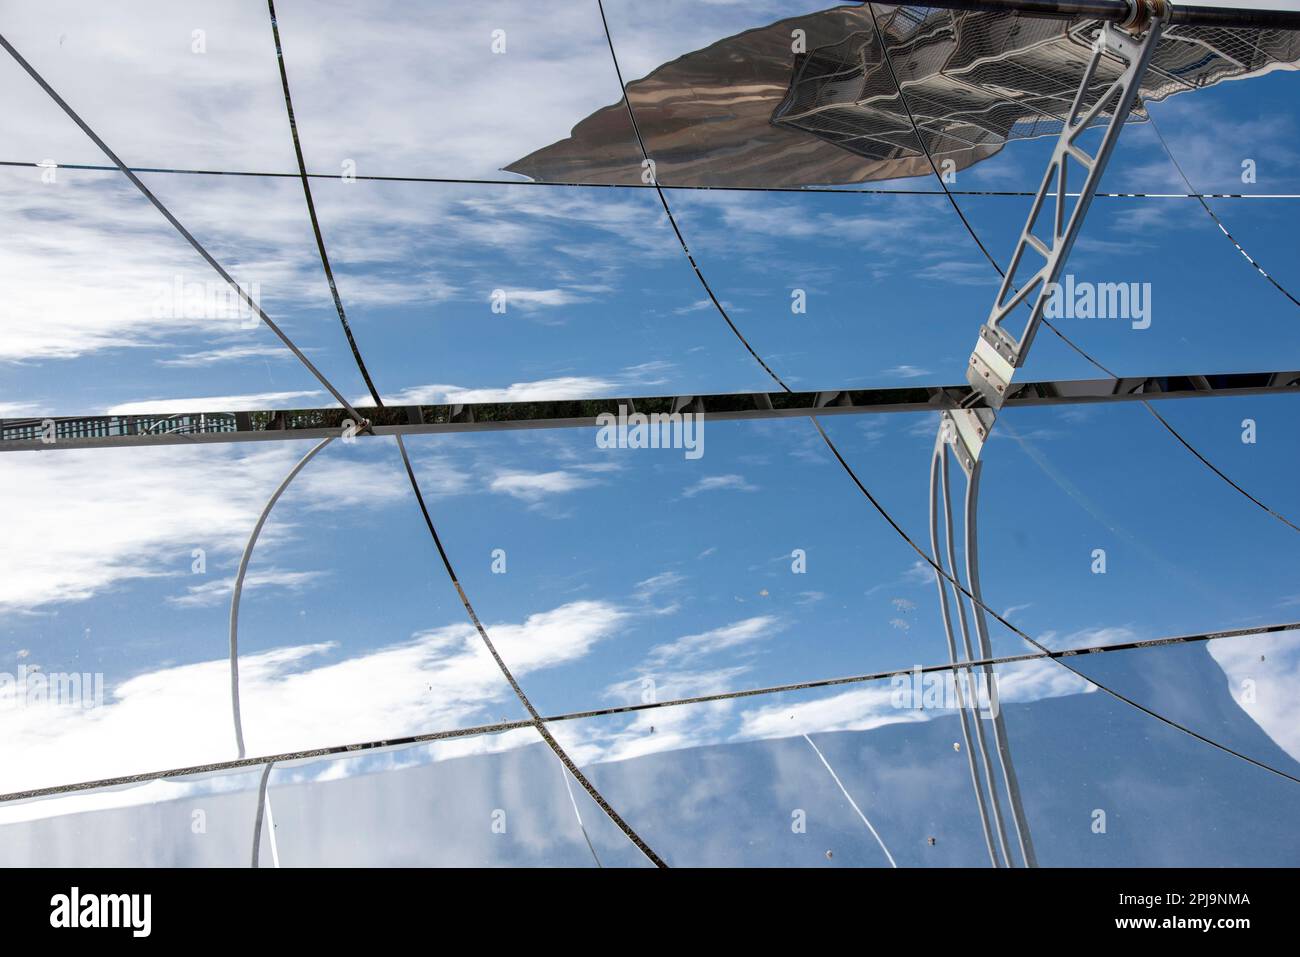 Detalle de los espejos solares parabólicos de una instalación de energía solar Stock Photo